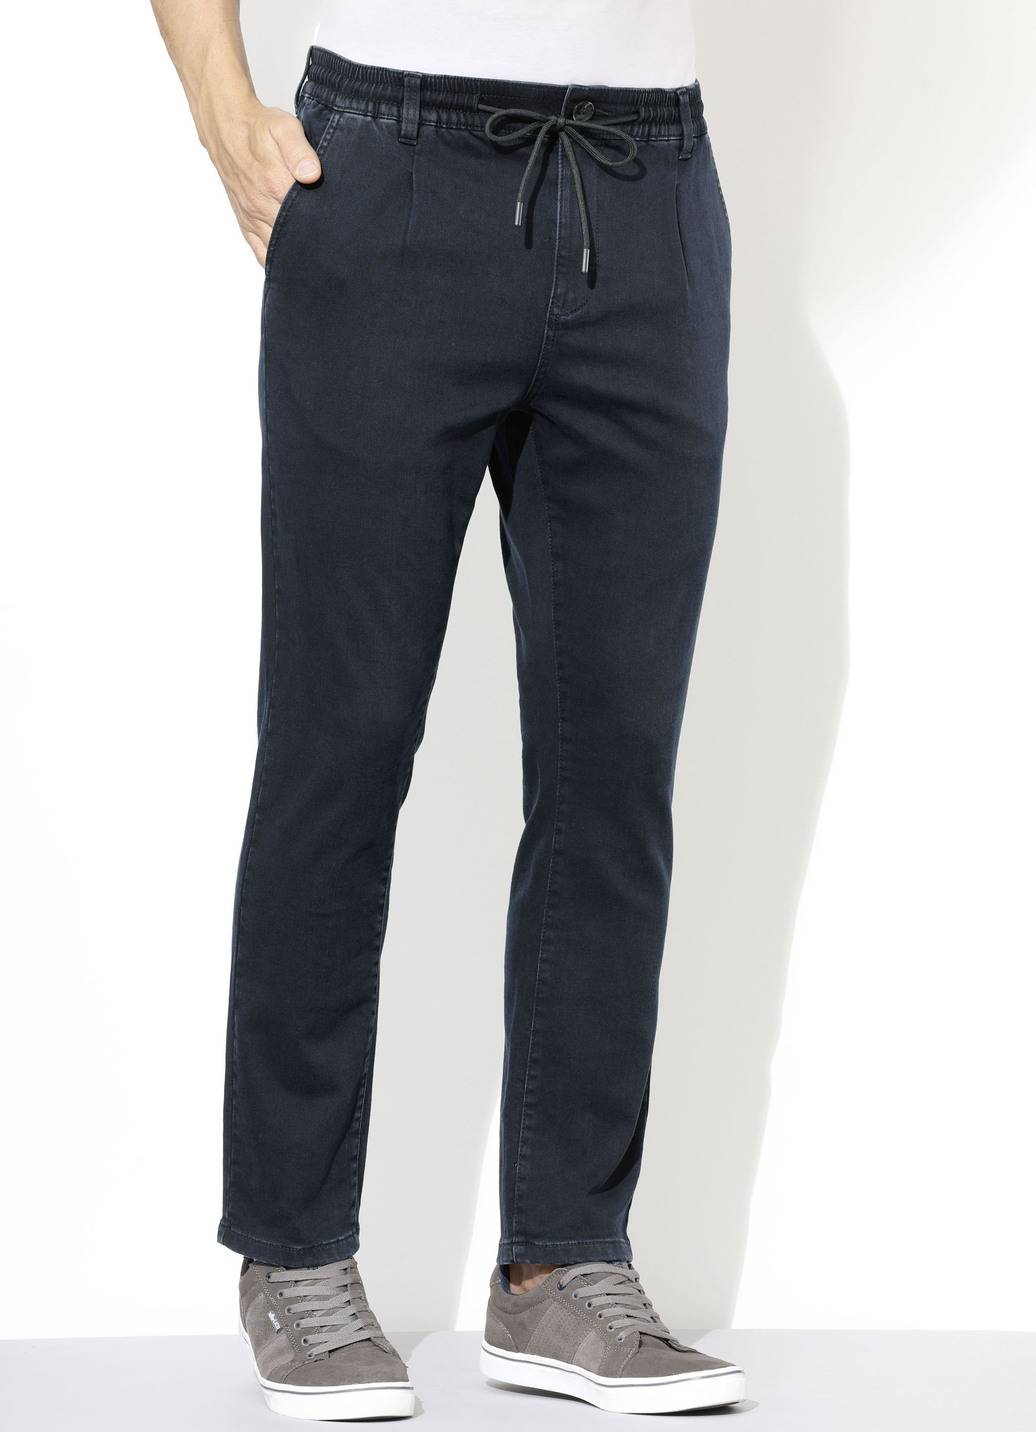 Superstretch-Jeans in 3 Farben, Dunkelblau, Größe 27 von DANNECKER